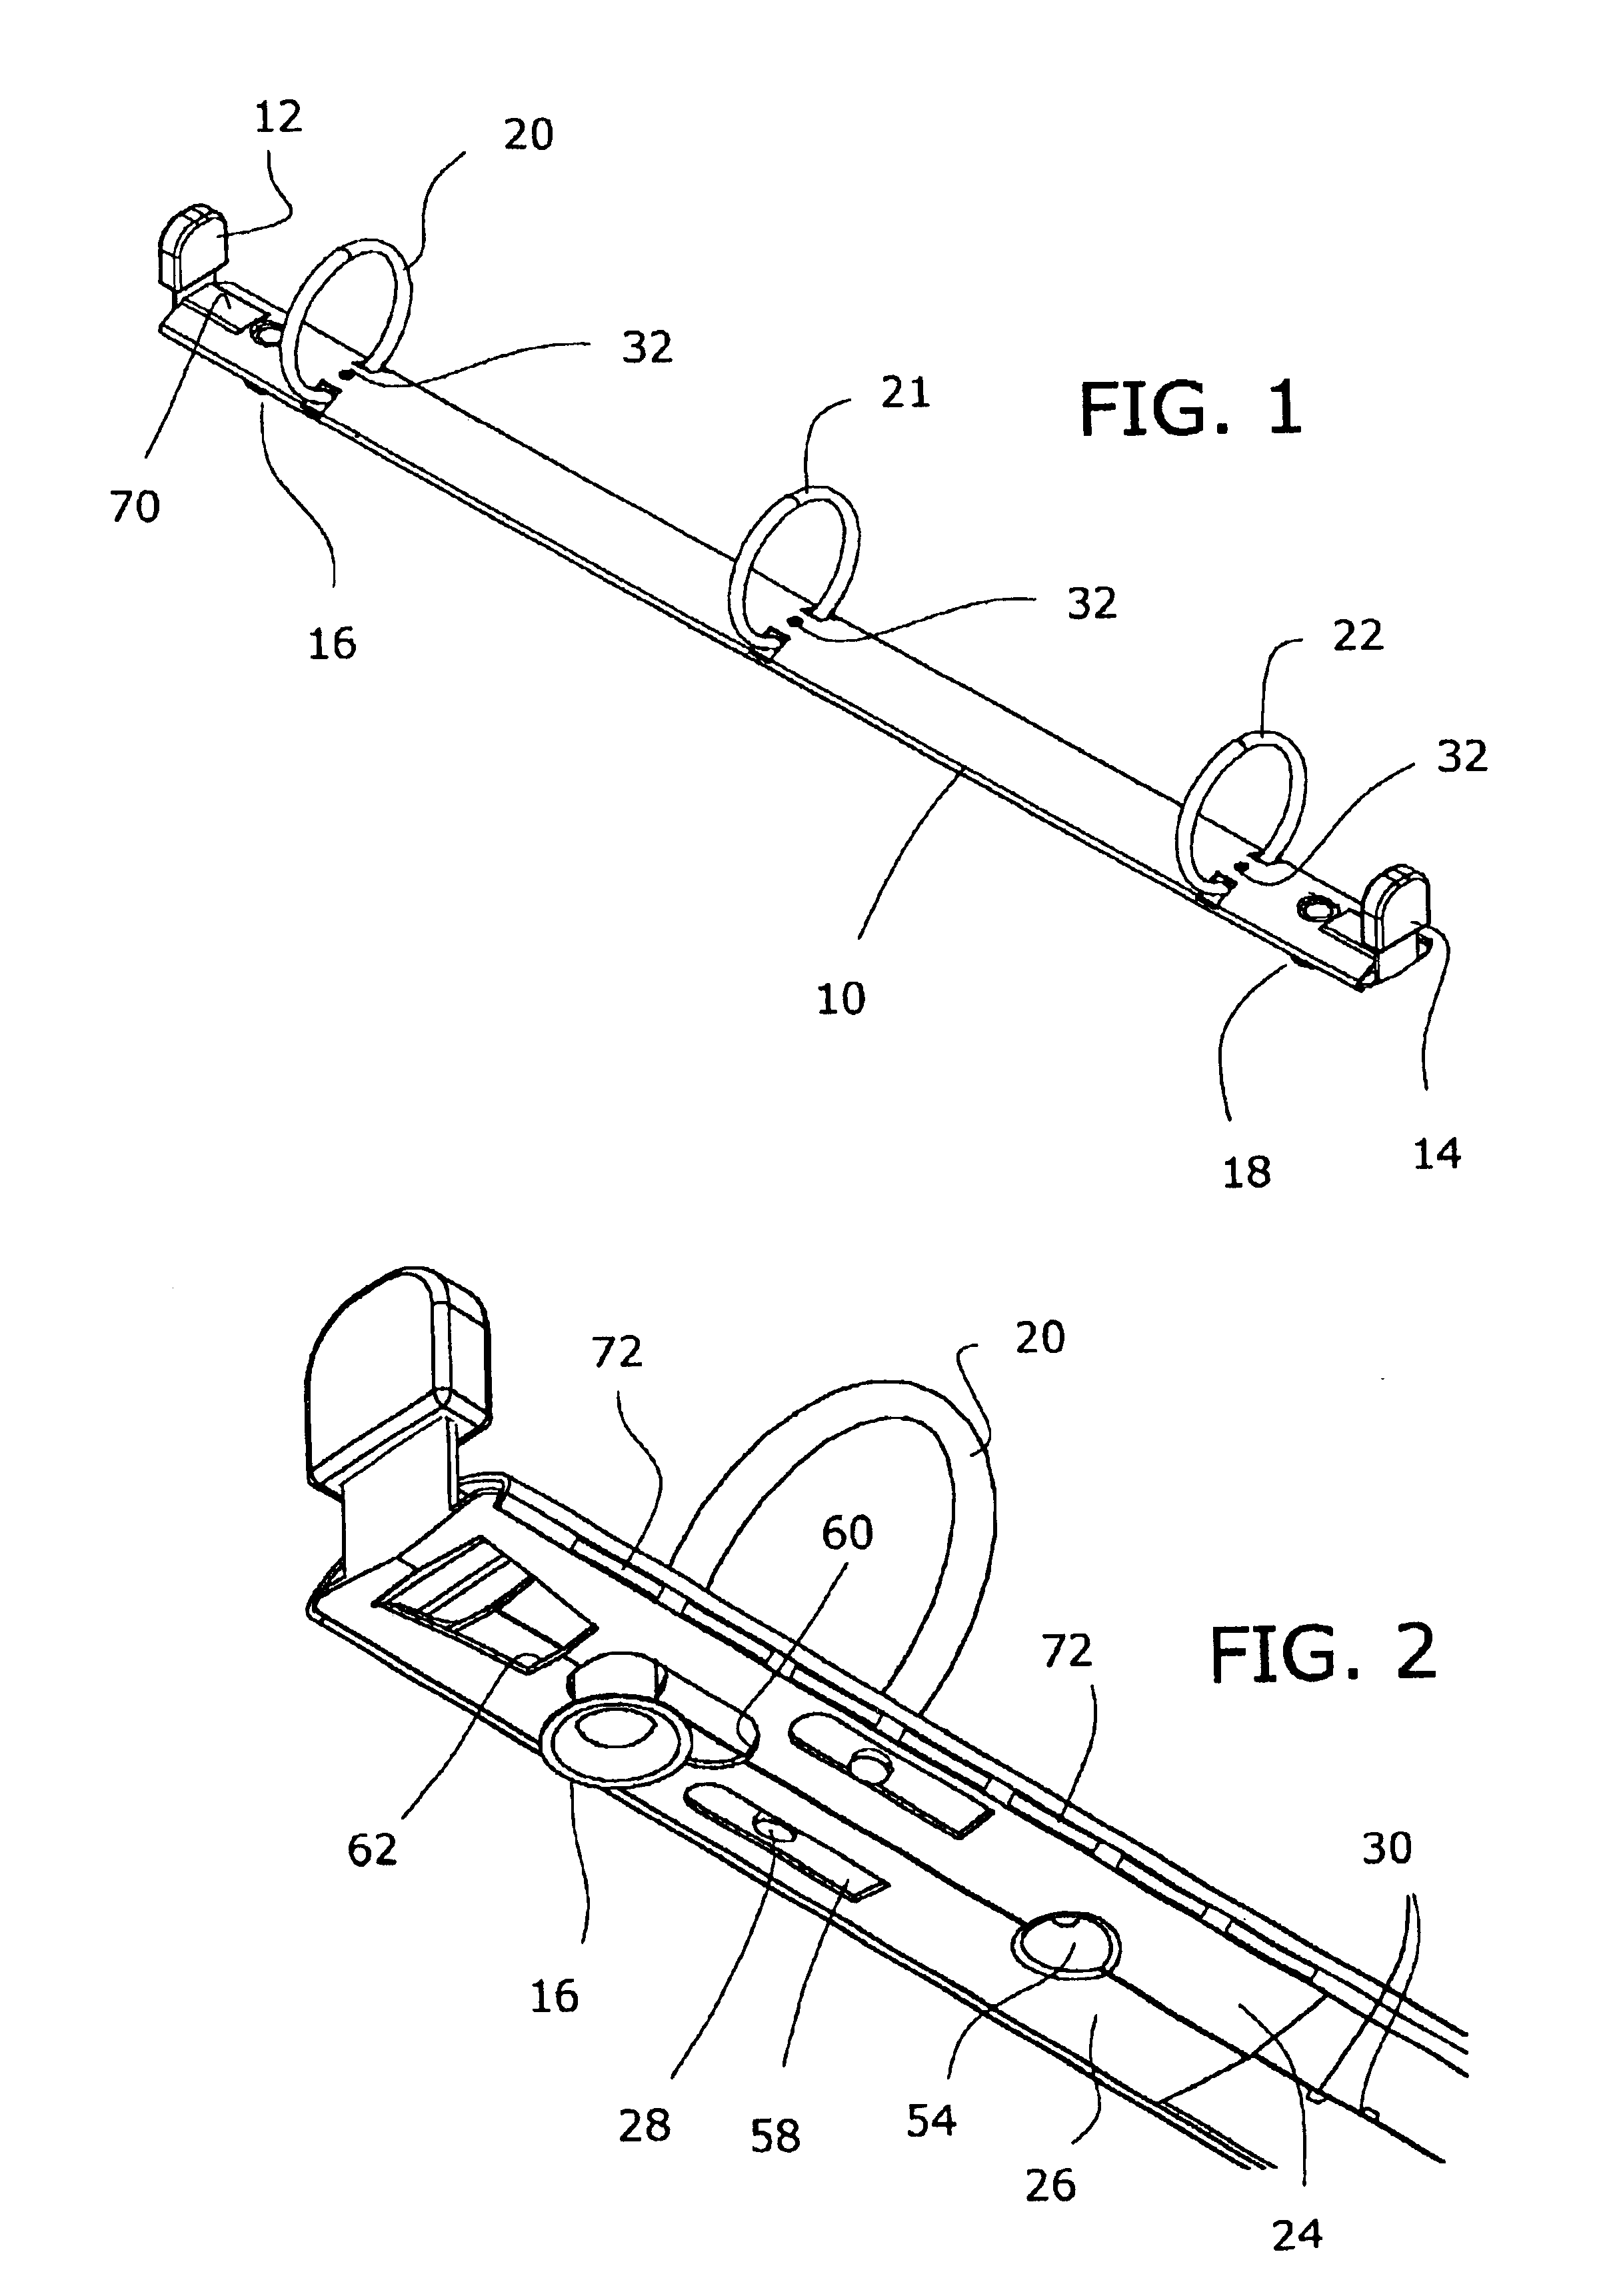 Safety ring binder having sliding actuators